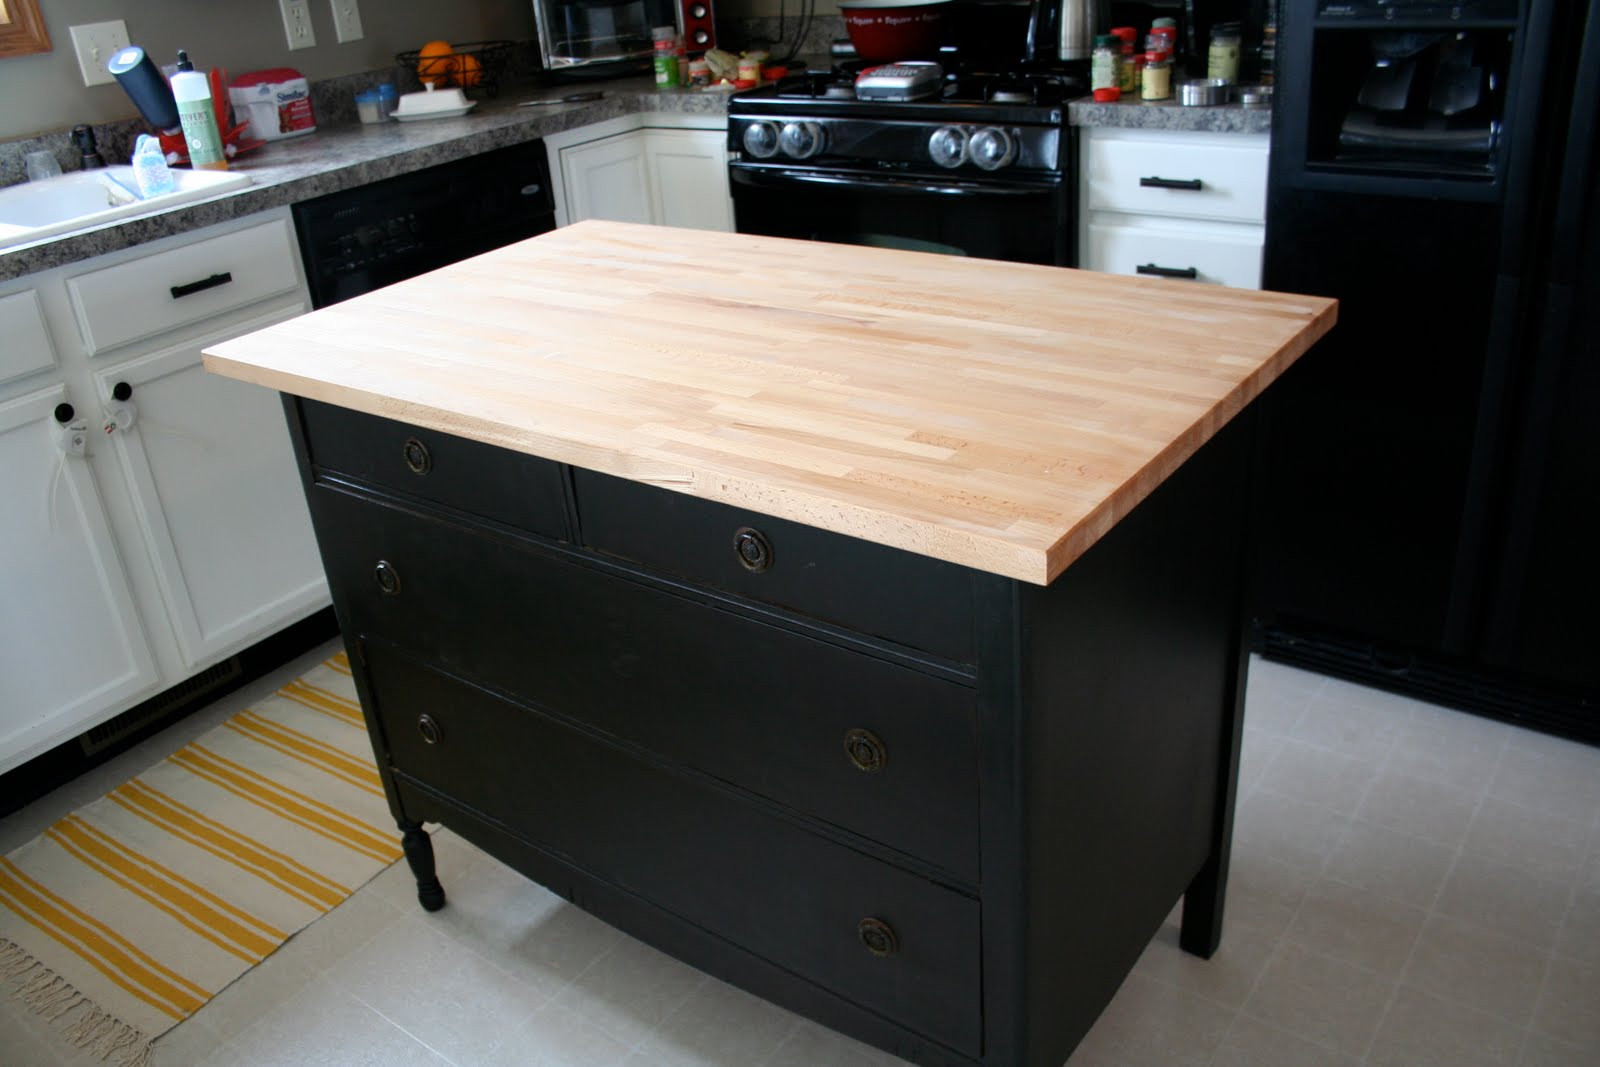 Best ideas about Dresser Kitchen Island DIY
. Save or Pin Homemakin and Decoratin Dresser as kitchen island Now.